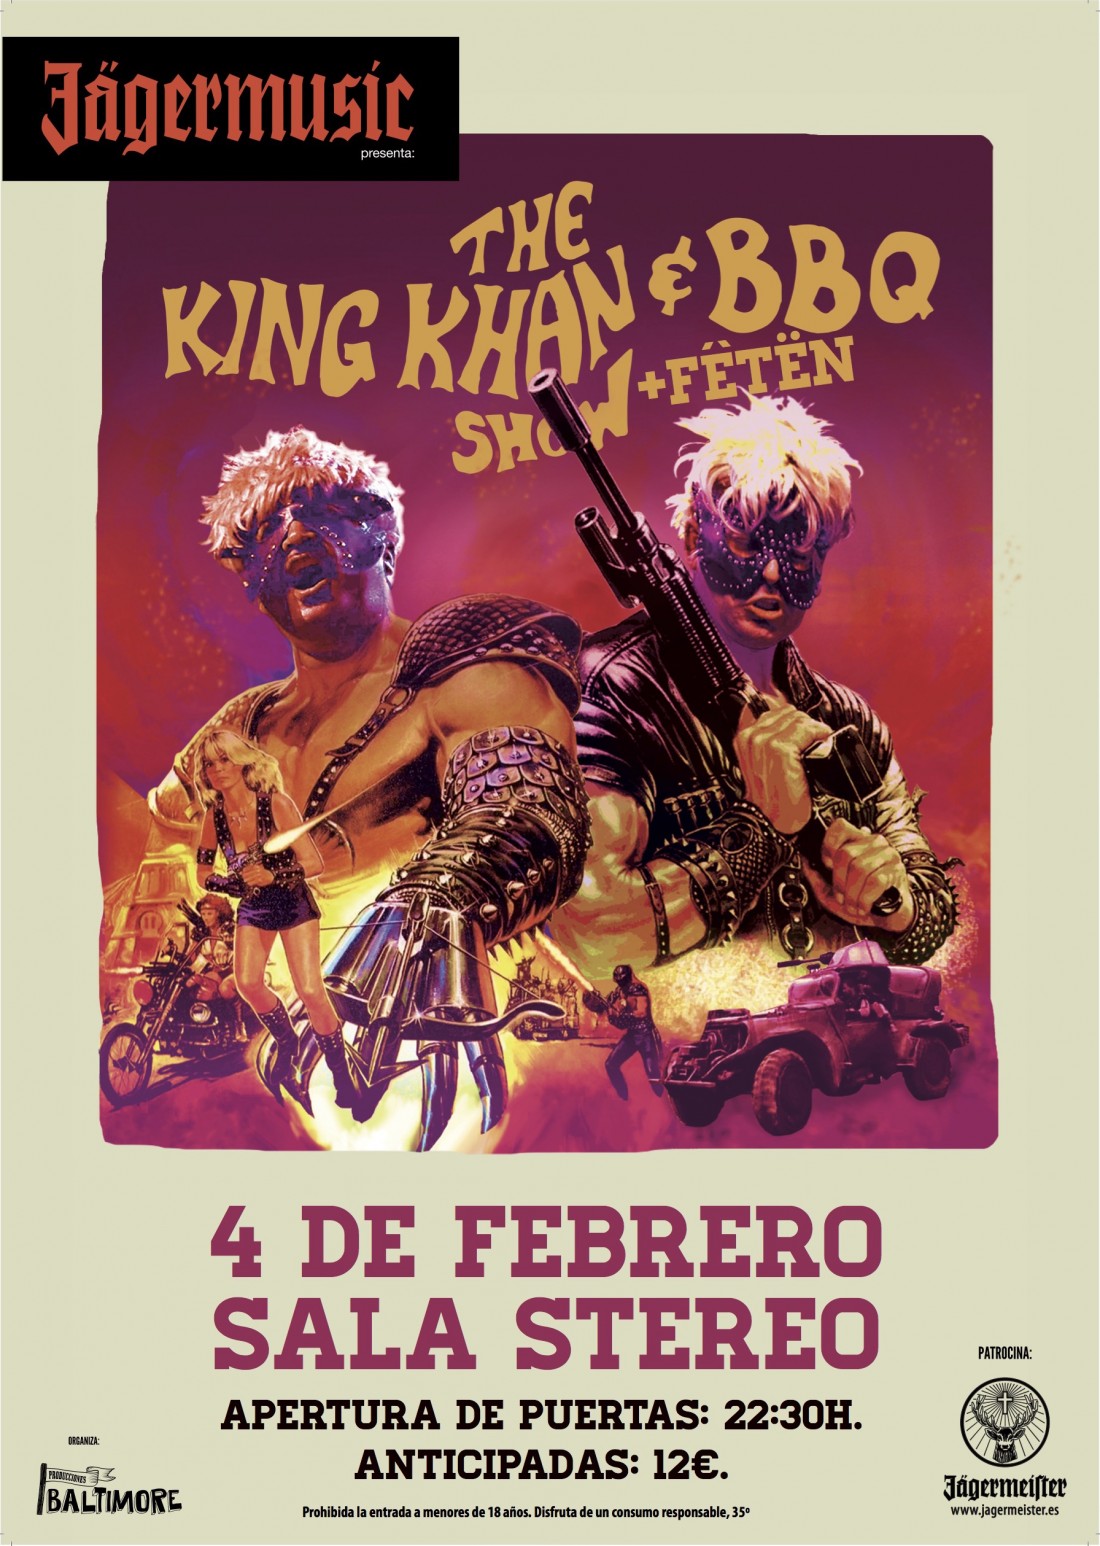 The King Khan & BBQ Show traen a Alicante su desenfrenado garage-rock en MÚSICA 